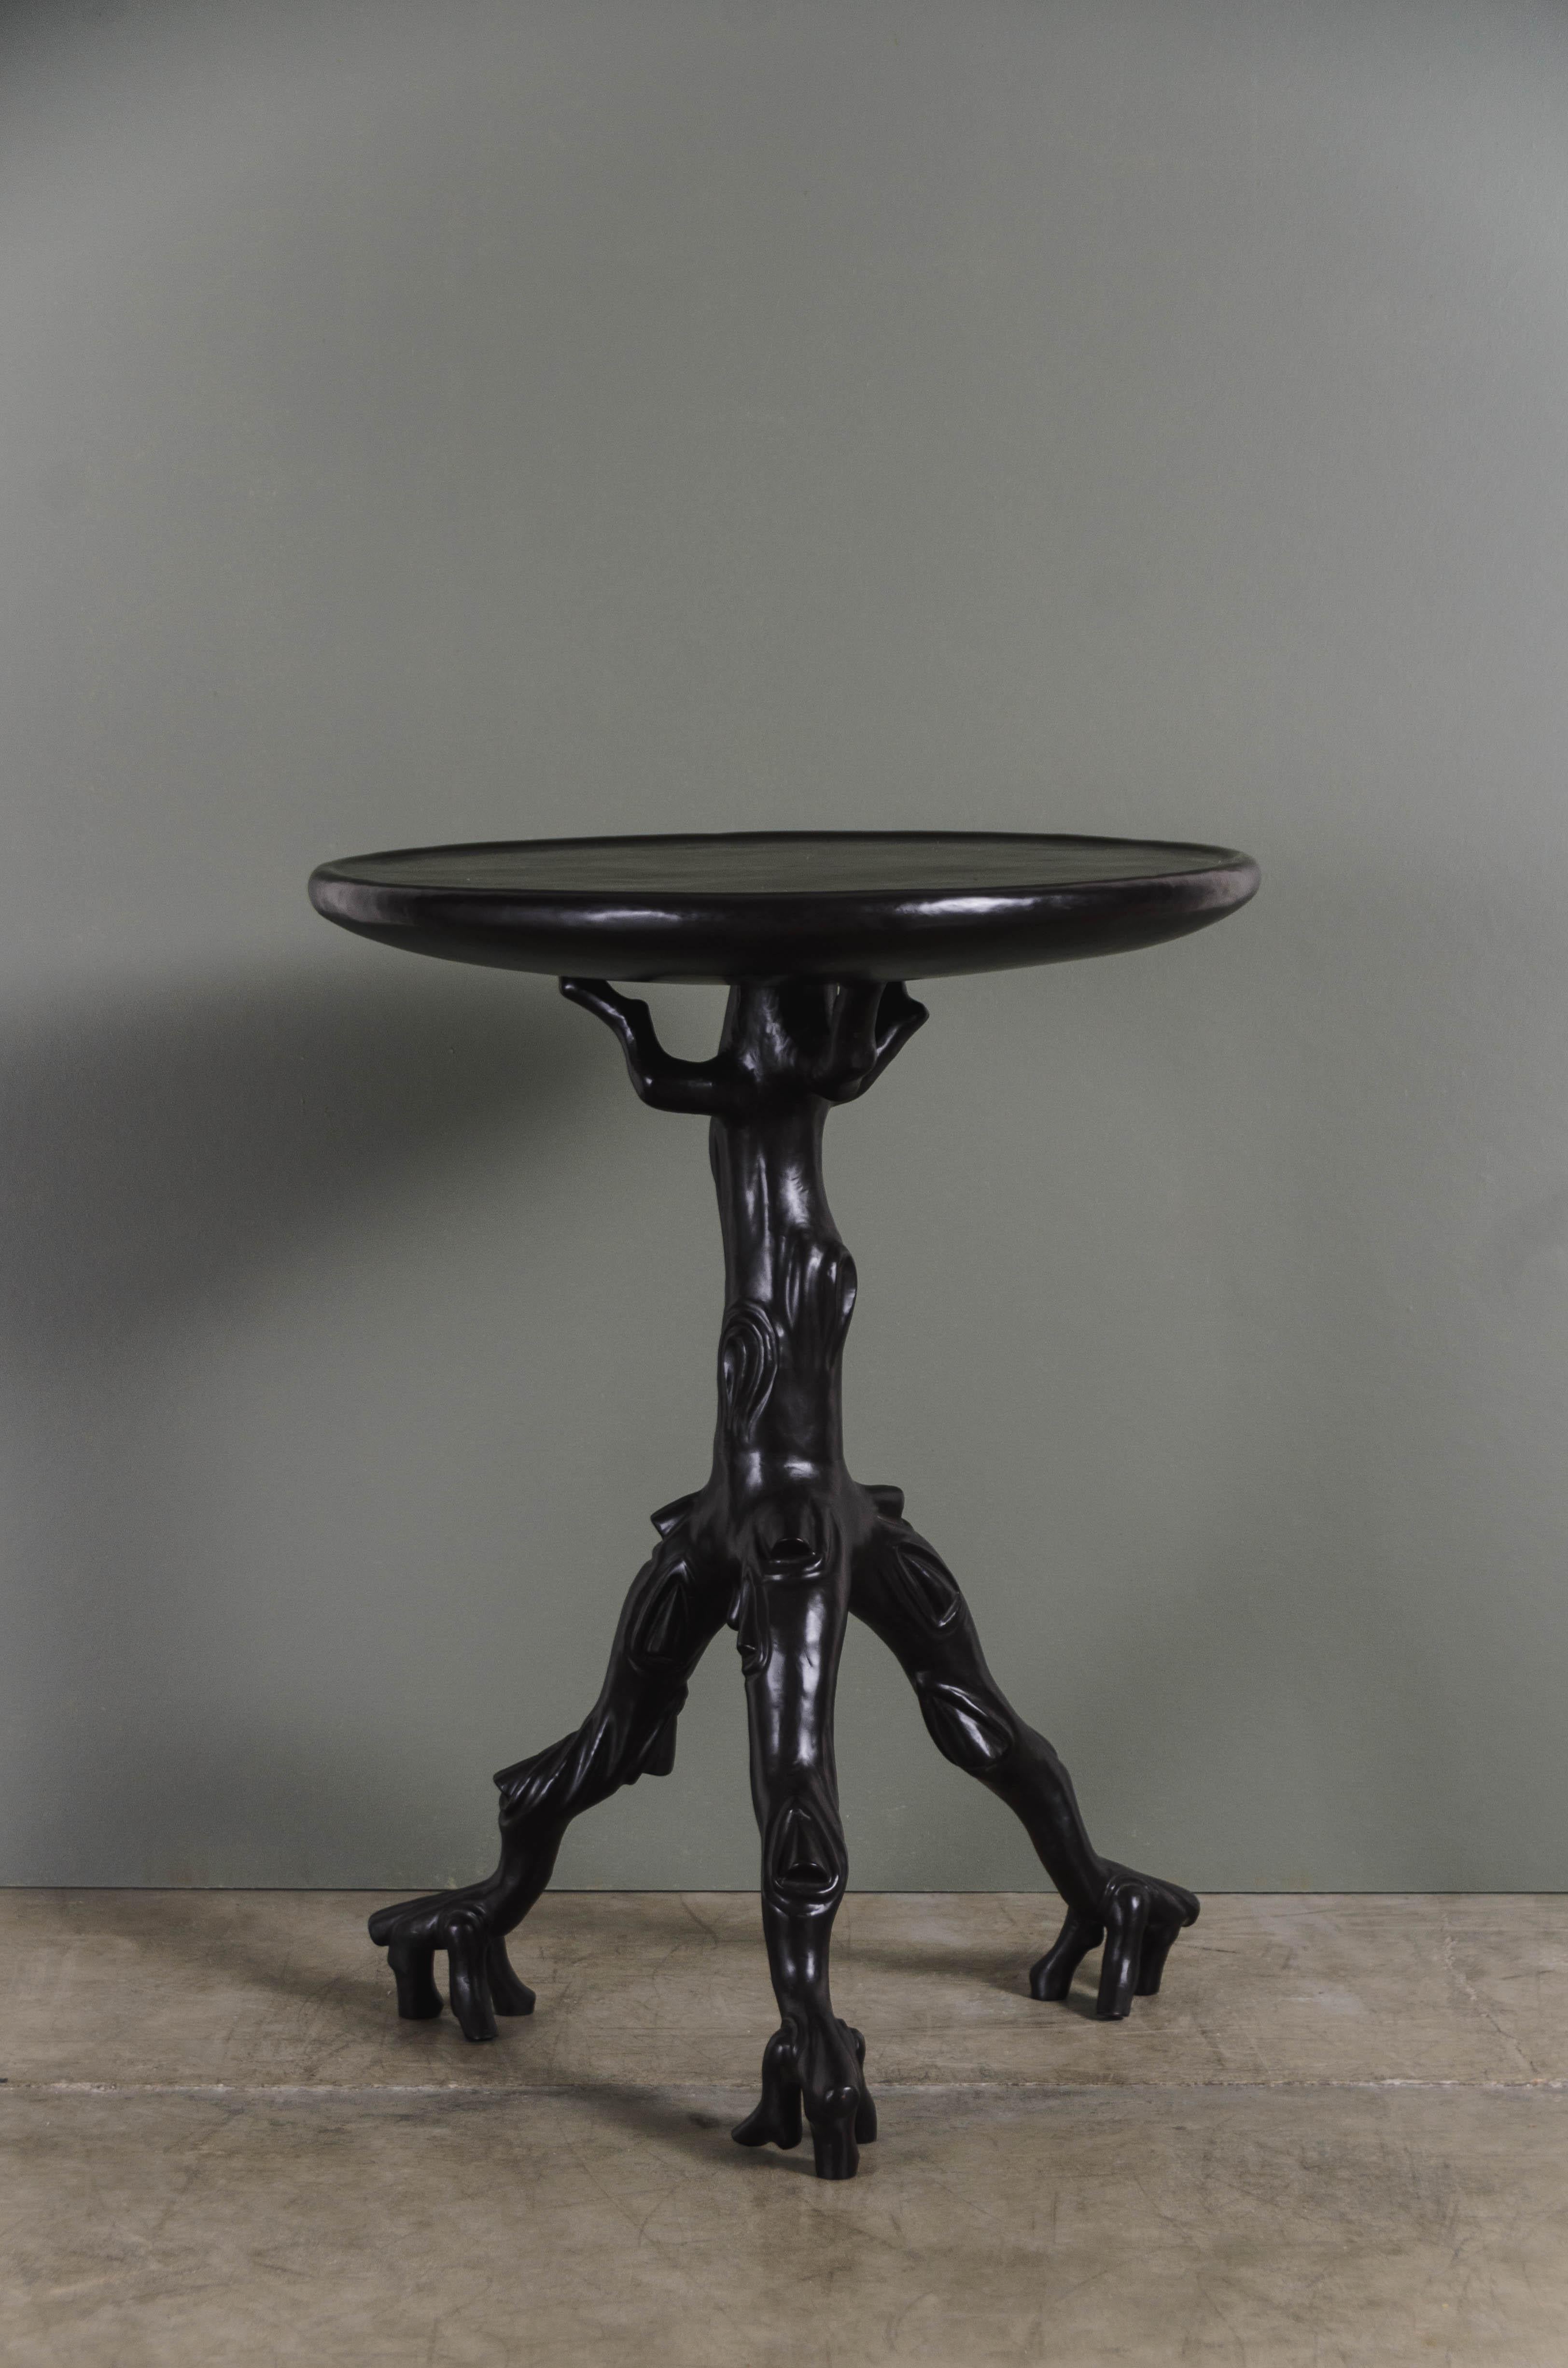 Zweig-Tisch
Schwarzes Kupfer-Finish
Hand-Repoussé
Limitierte Auflage
Jedes Stück wird individuell angefertigt und ist einzigartig. 
Repoussé ist die traditionelle Kunst, ein dekoratives Relief von Hand auf ein Blech zu hämmern. Die Technik